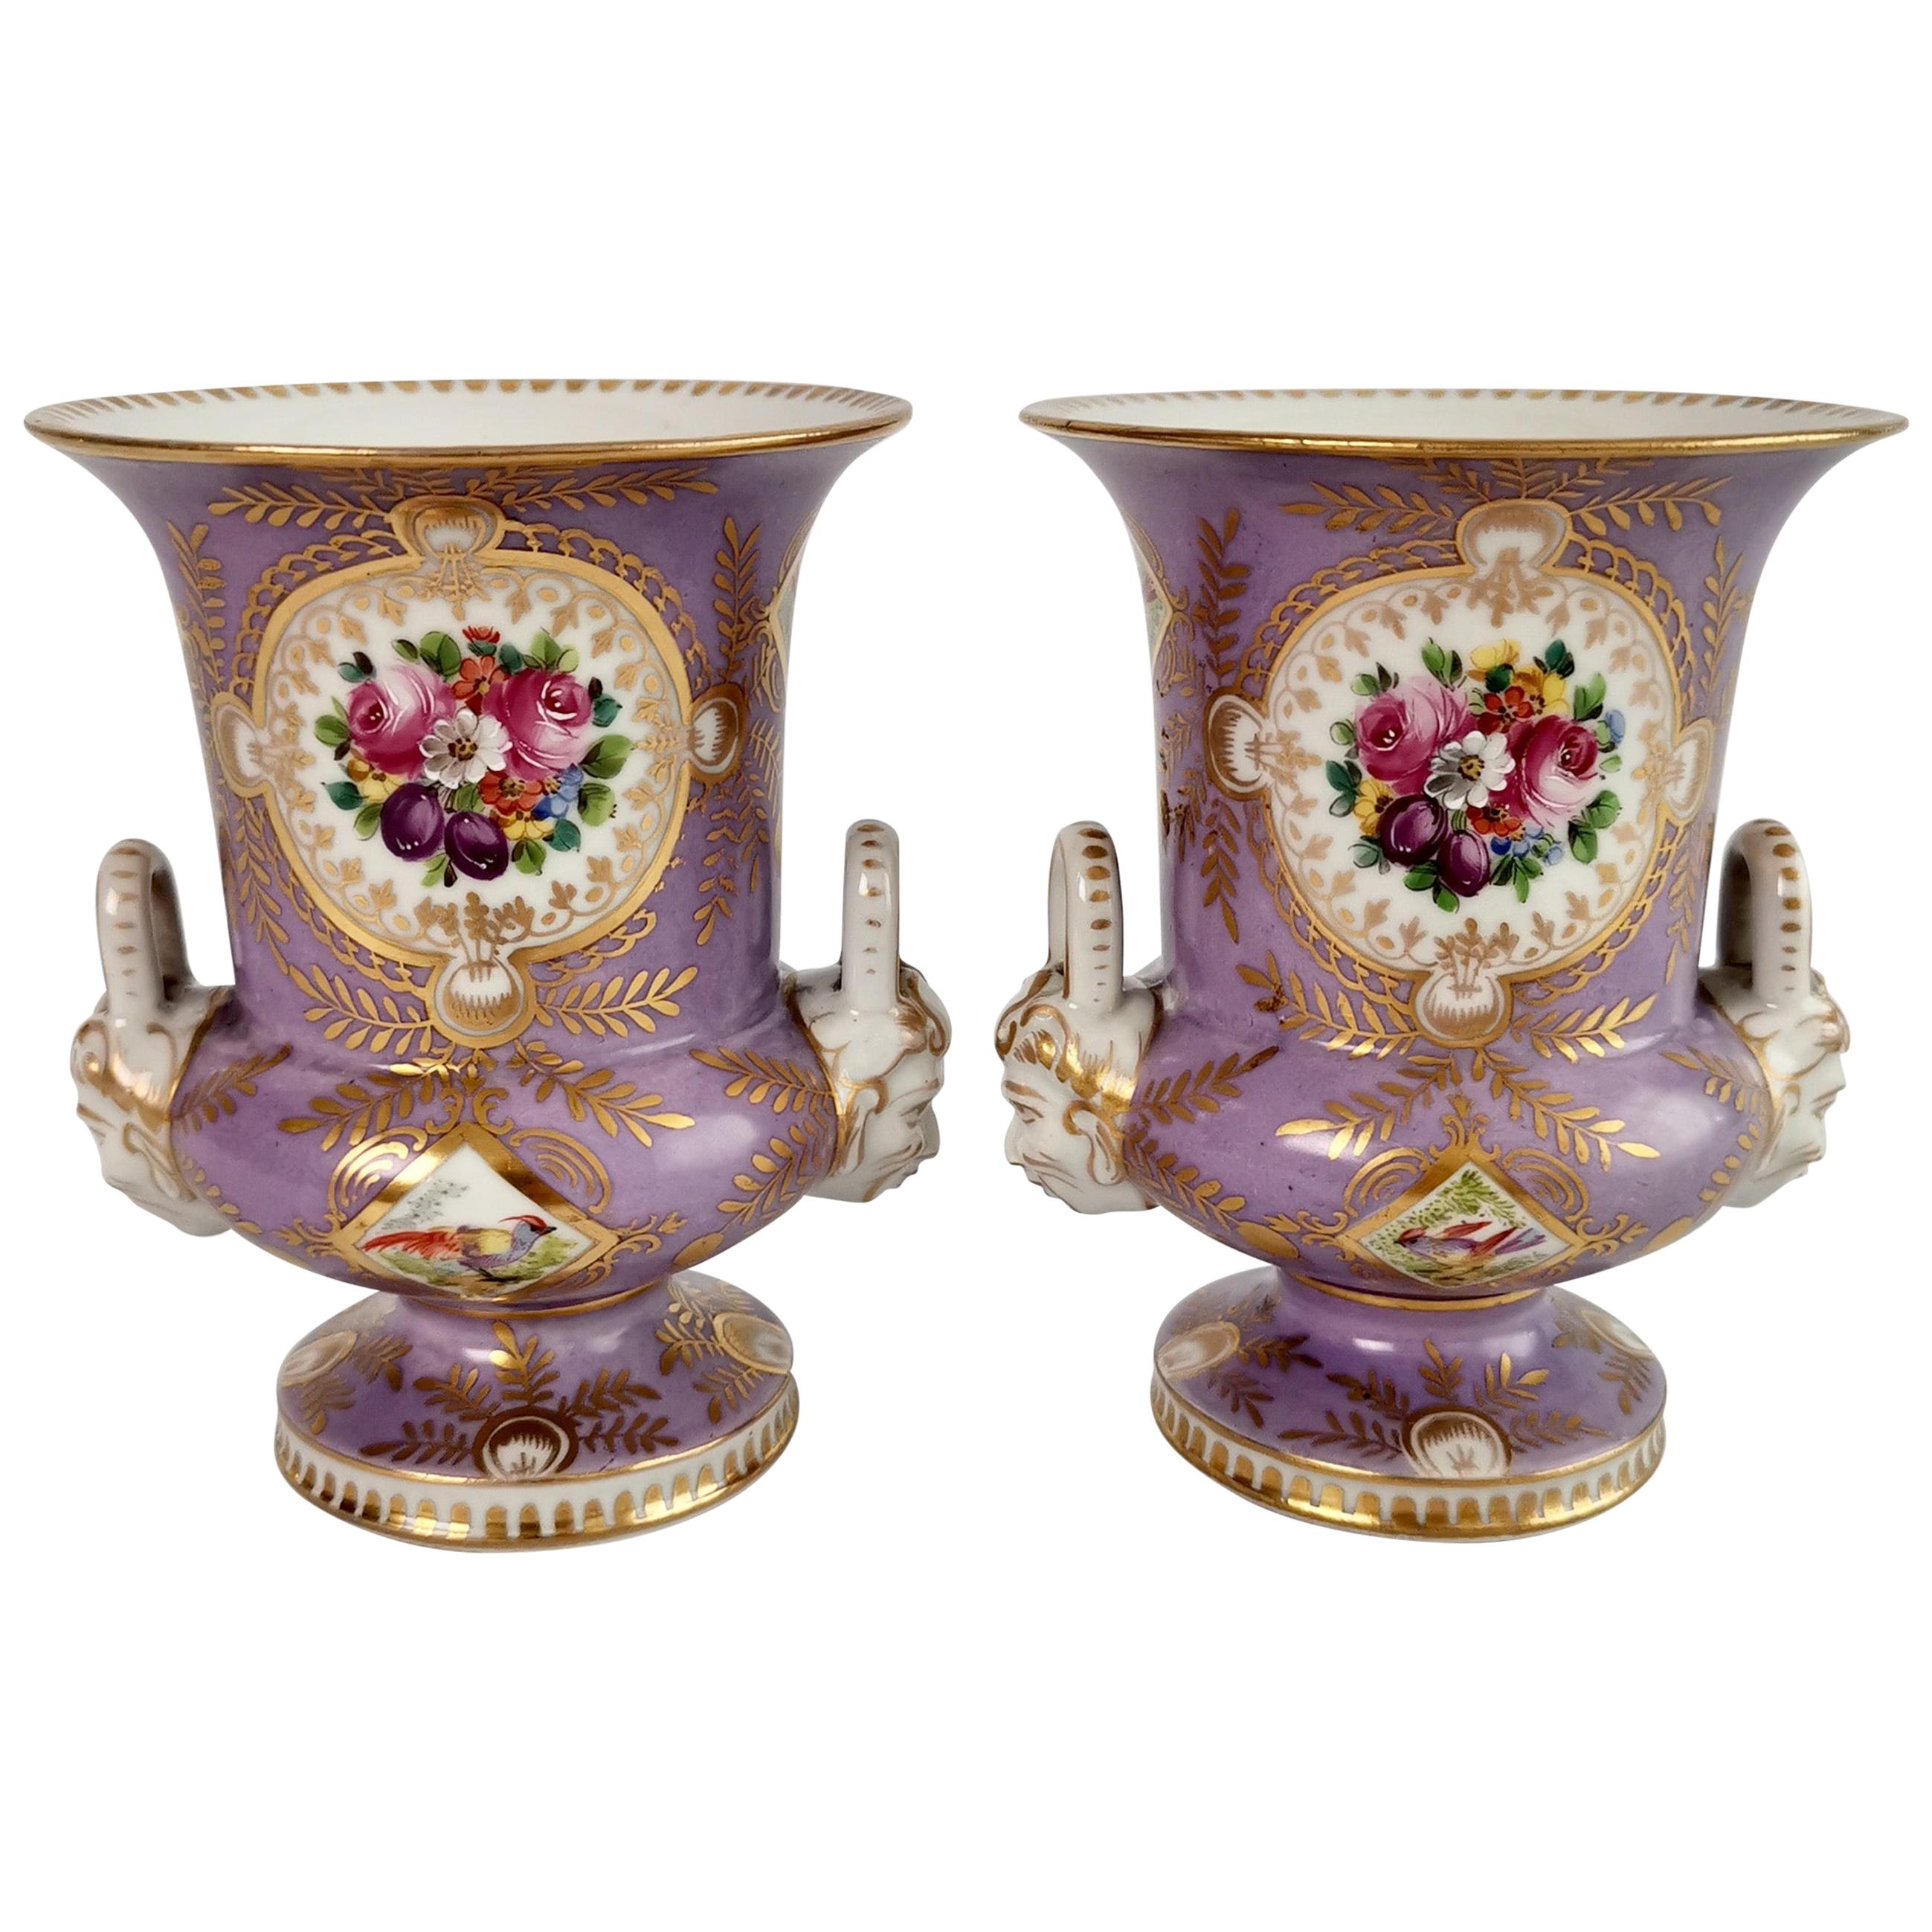 Campana-Vasen aus Porzellan, Edmé Samson zugeschrieben, Flieder, Vögel, Blumen, 19. Jahrhundert